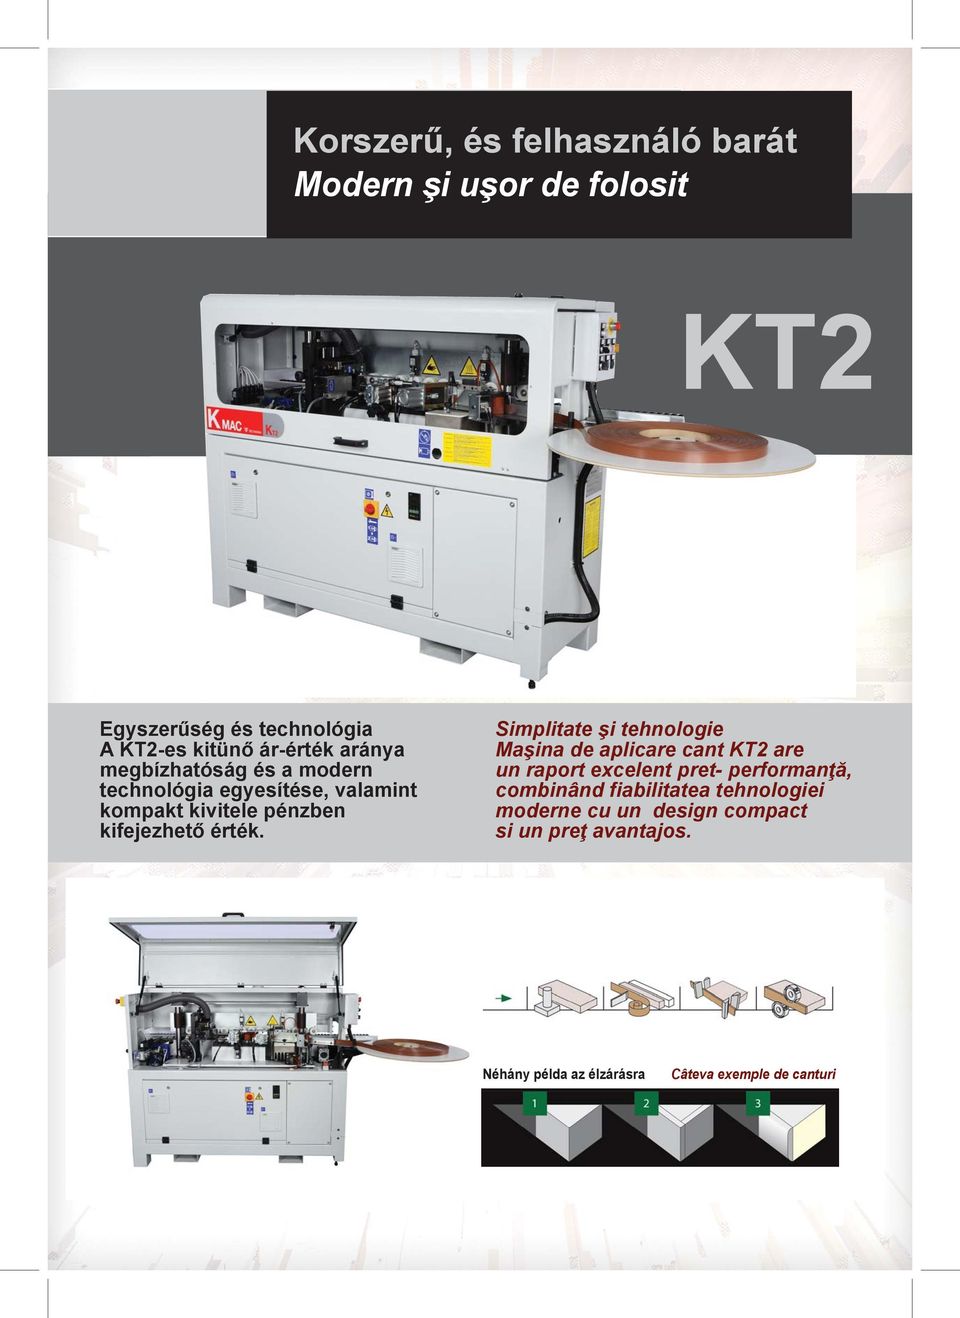 Simplitate şi tehnologie Maşina de aplicare cant KT2 are un raport excelent pret performanţă, combinând